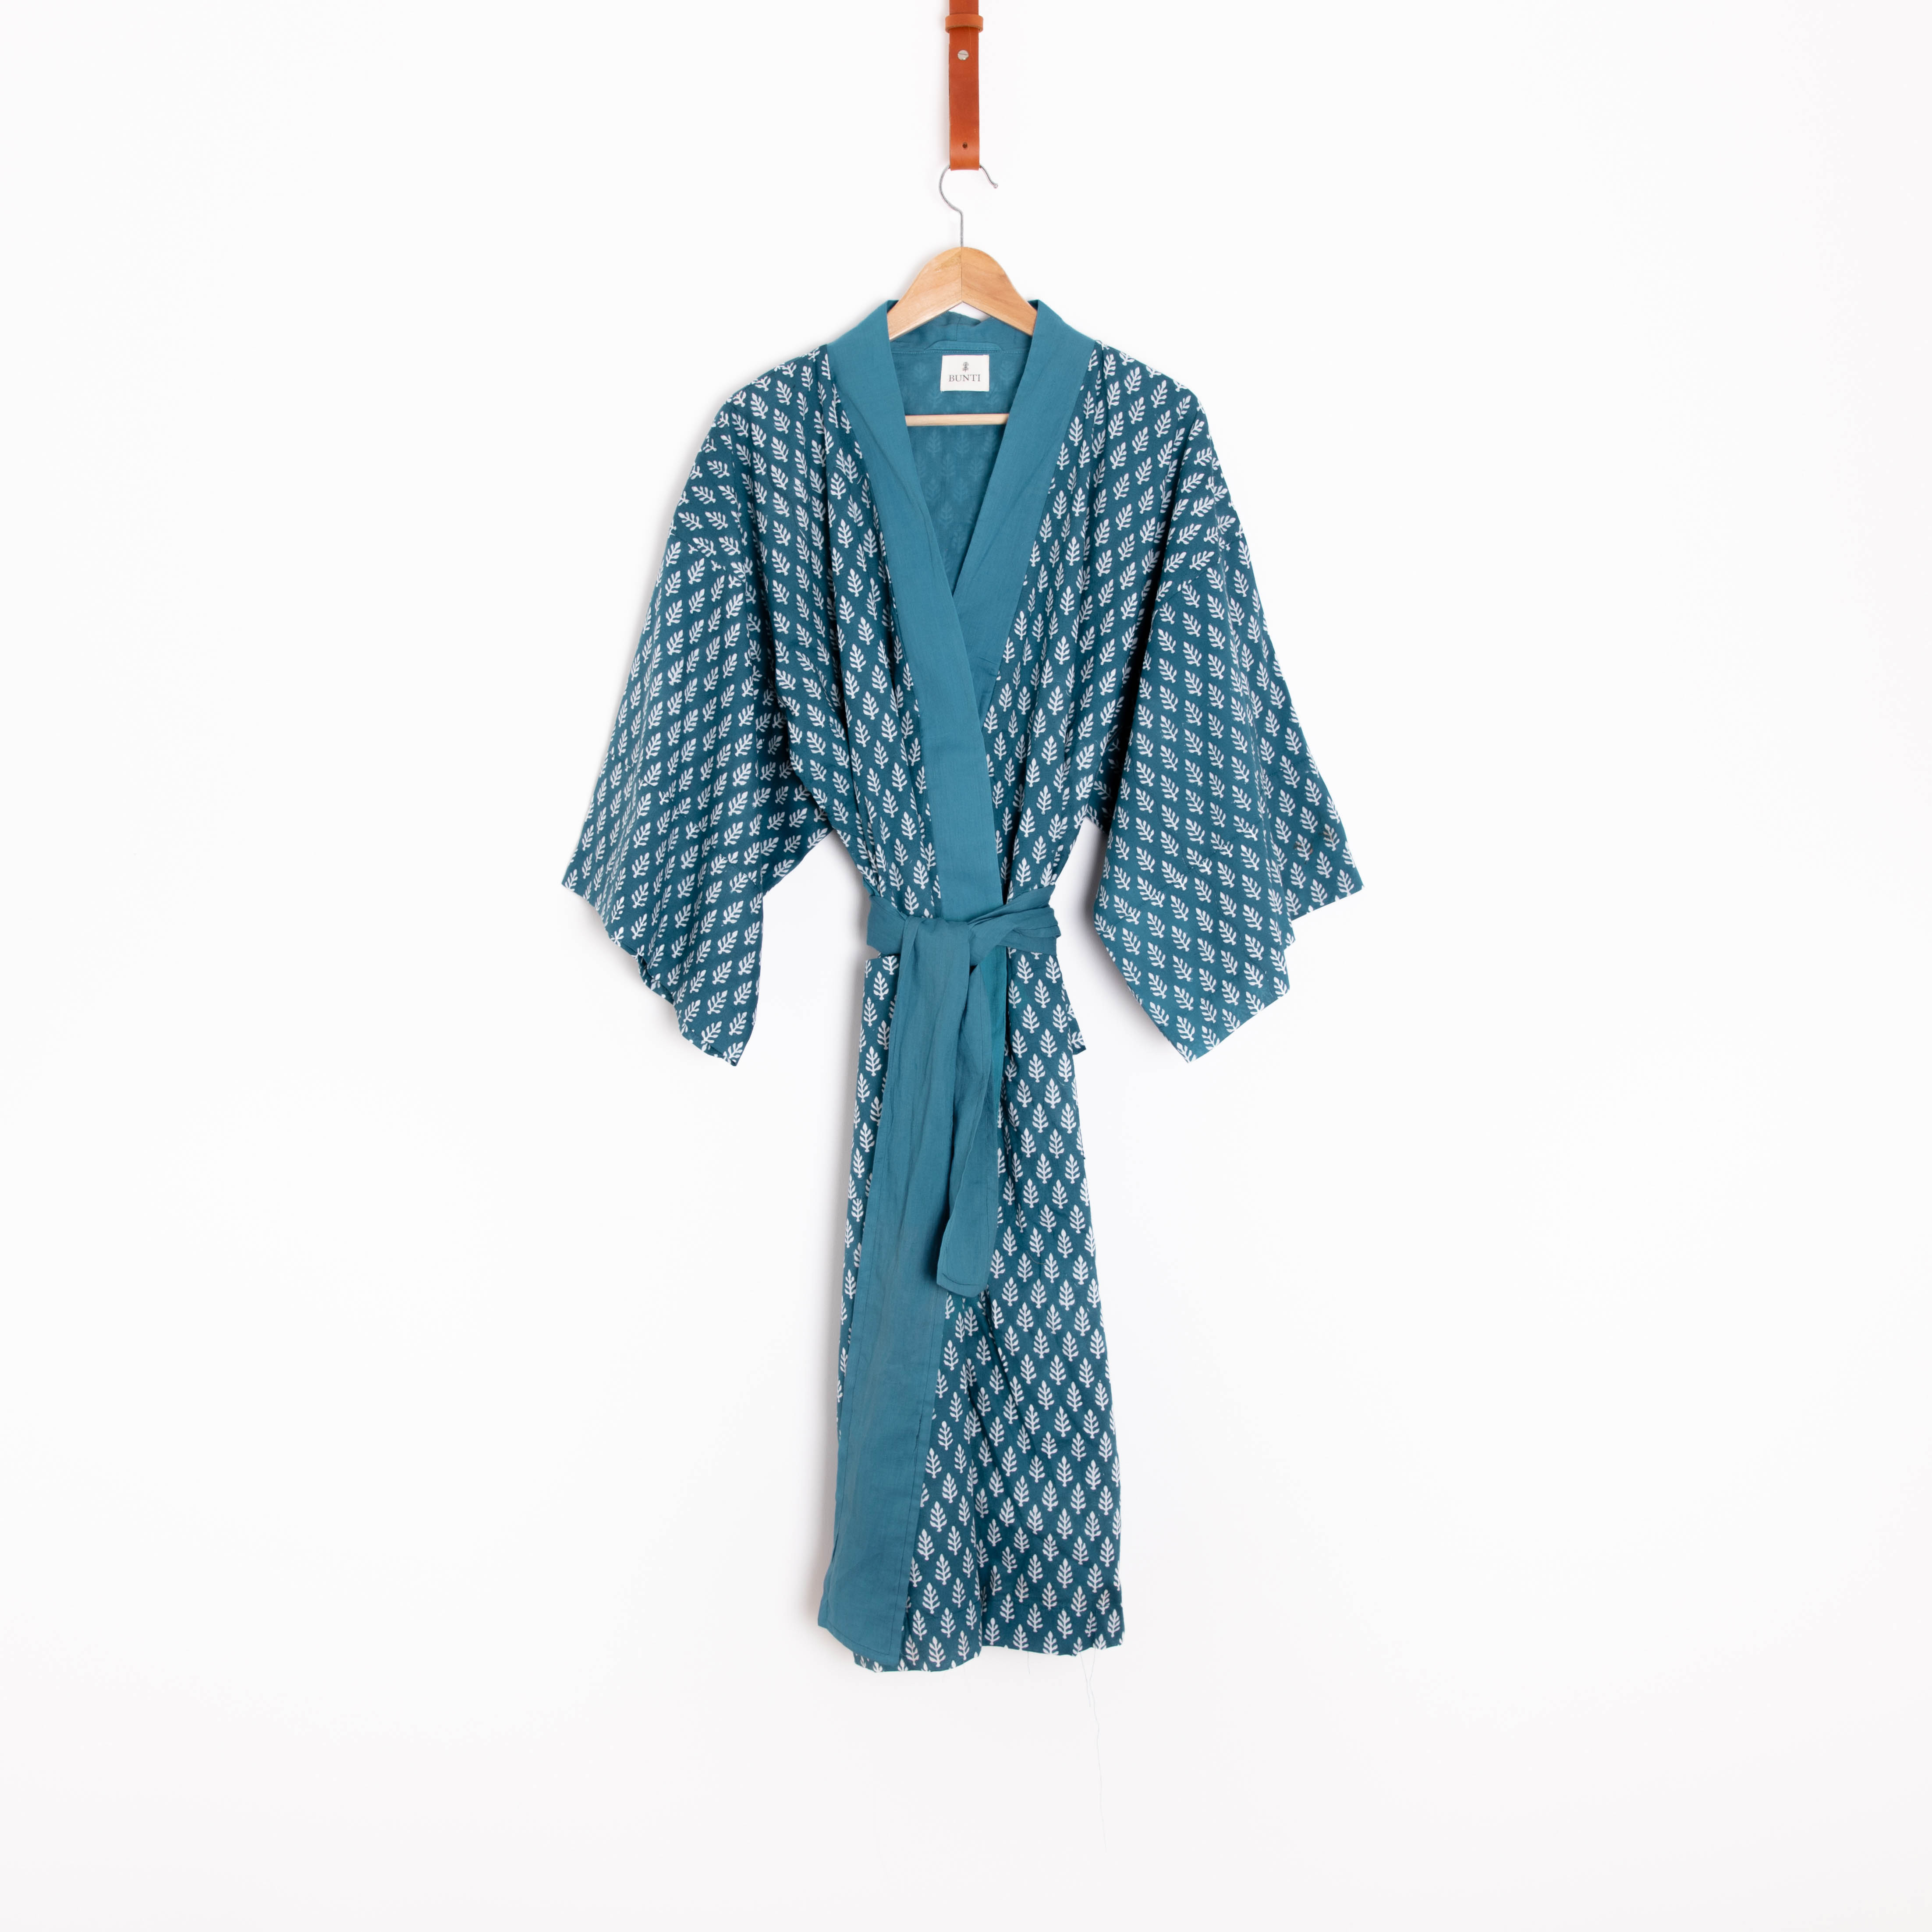 Bunti Hand Block Printed Kimono Dressing Gown Robe - Tanvi